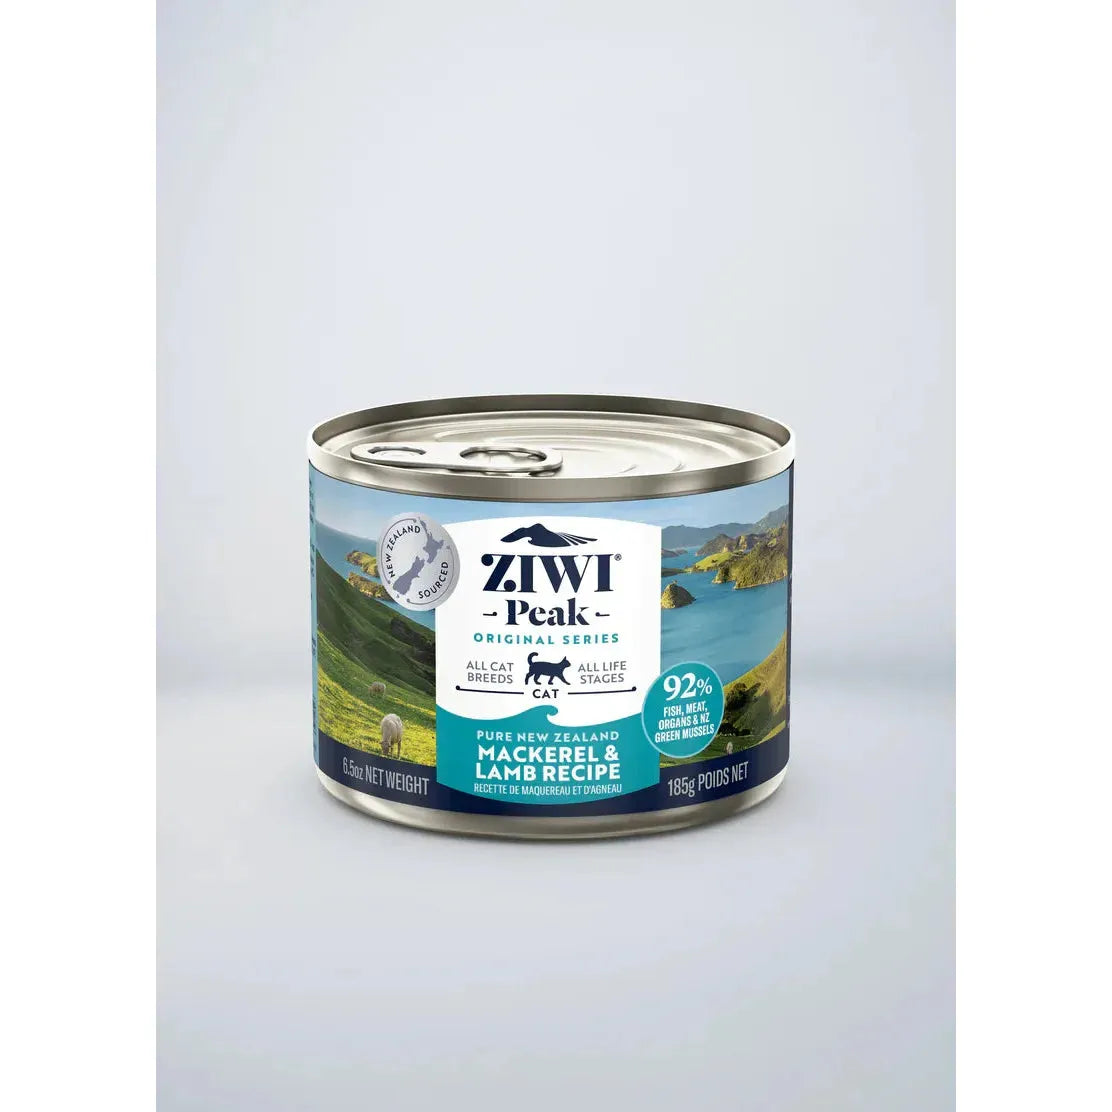 ZIWI Peak Cat Wet Food Cans Mackerel and Lamb Recipe